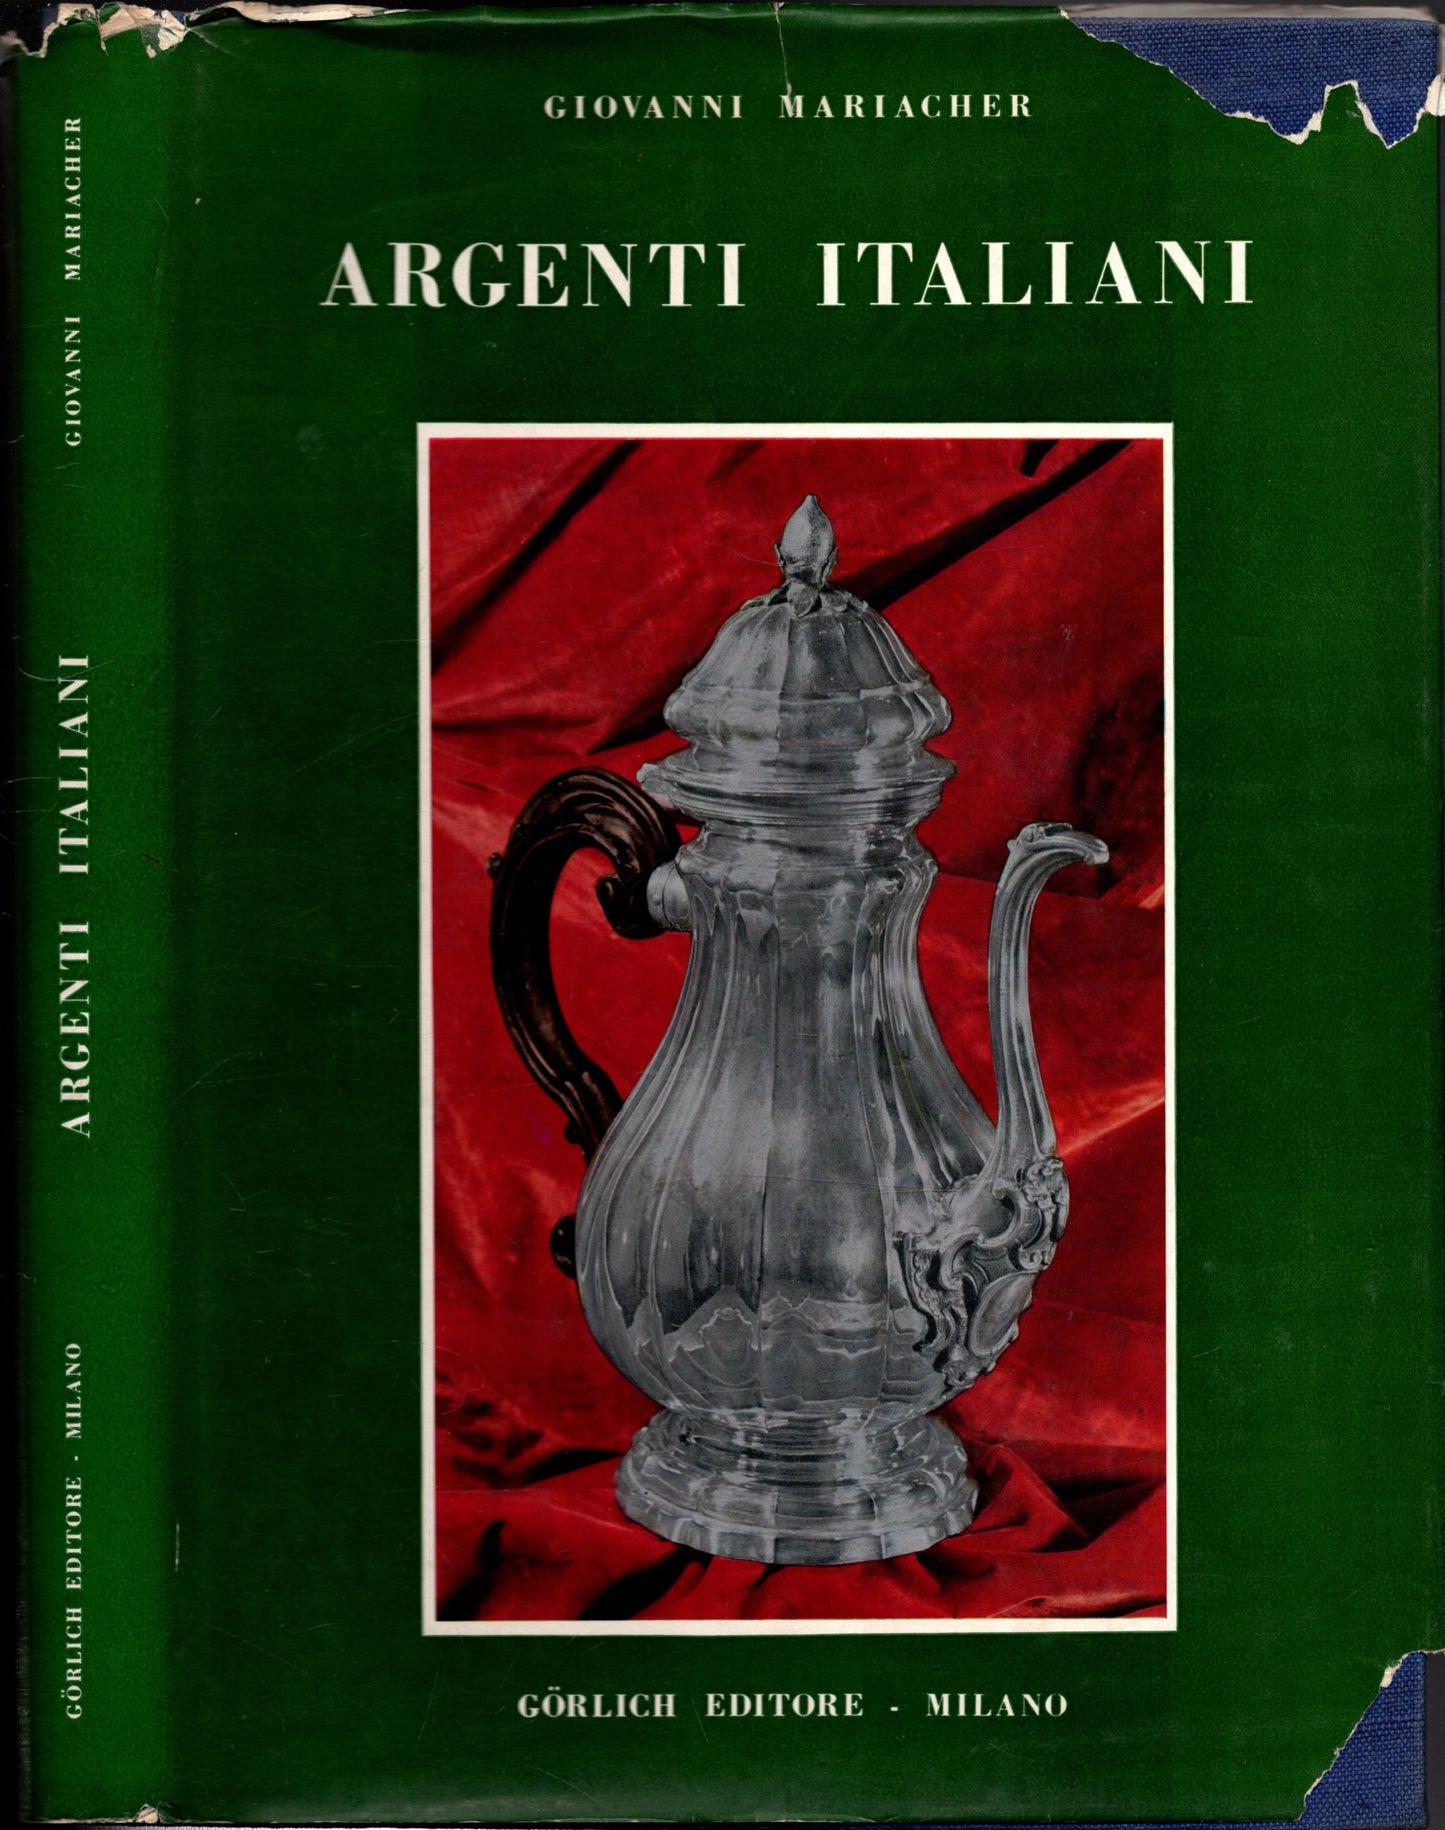 Argenti Italiani ** Mariacher G. ** Gorlich Editore 1965*